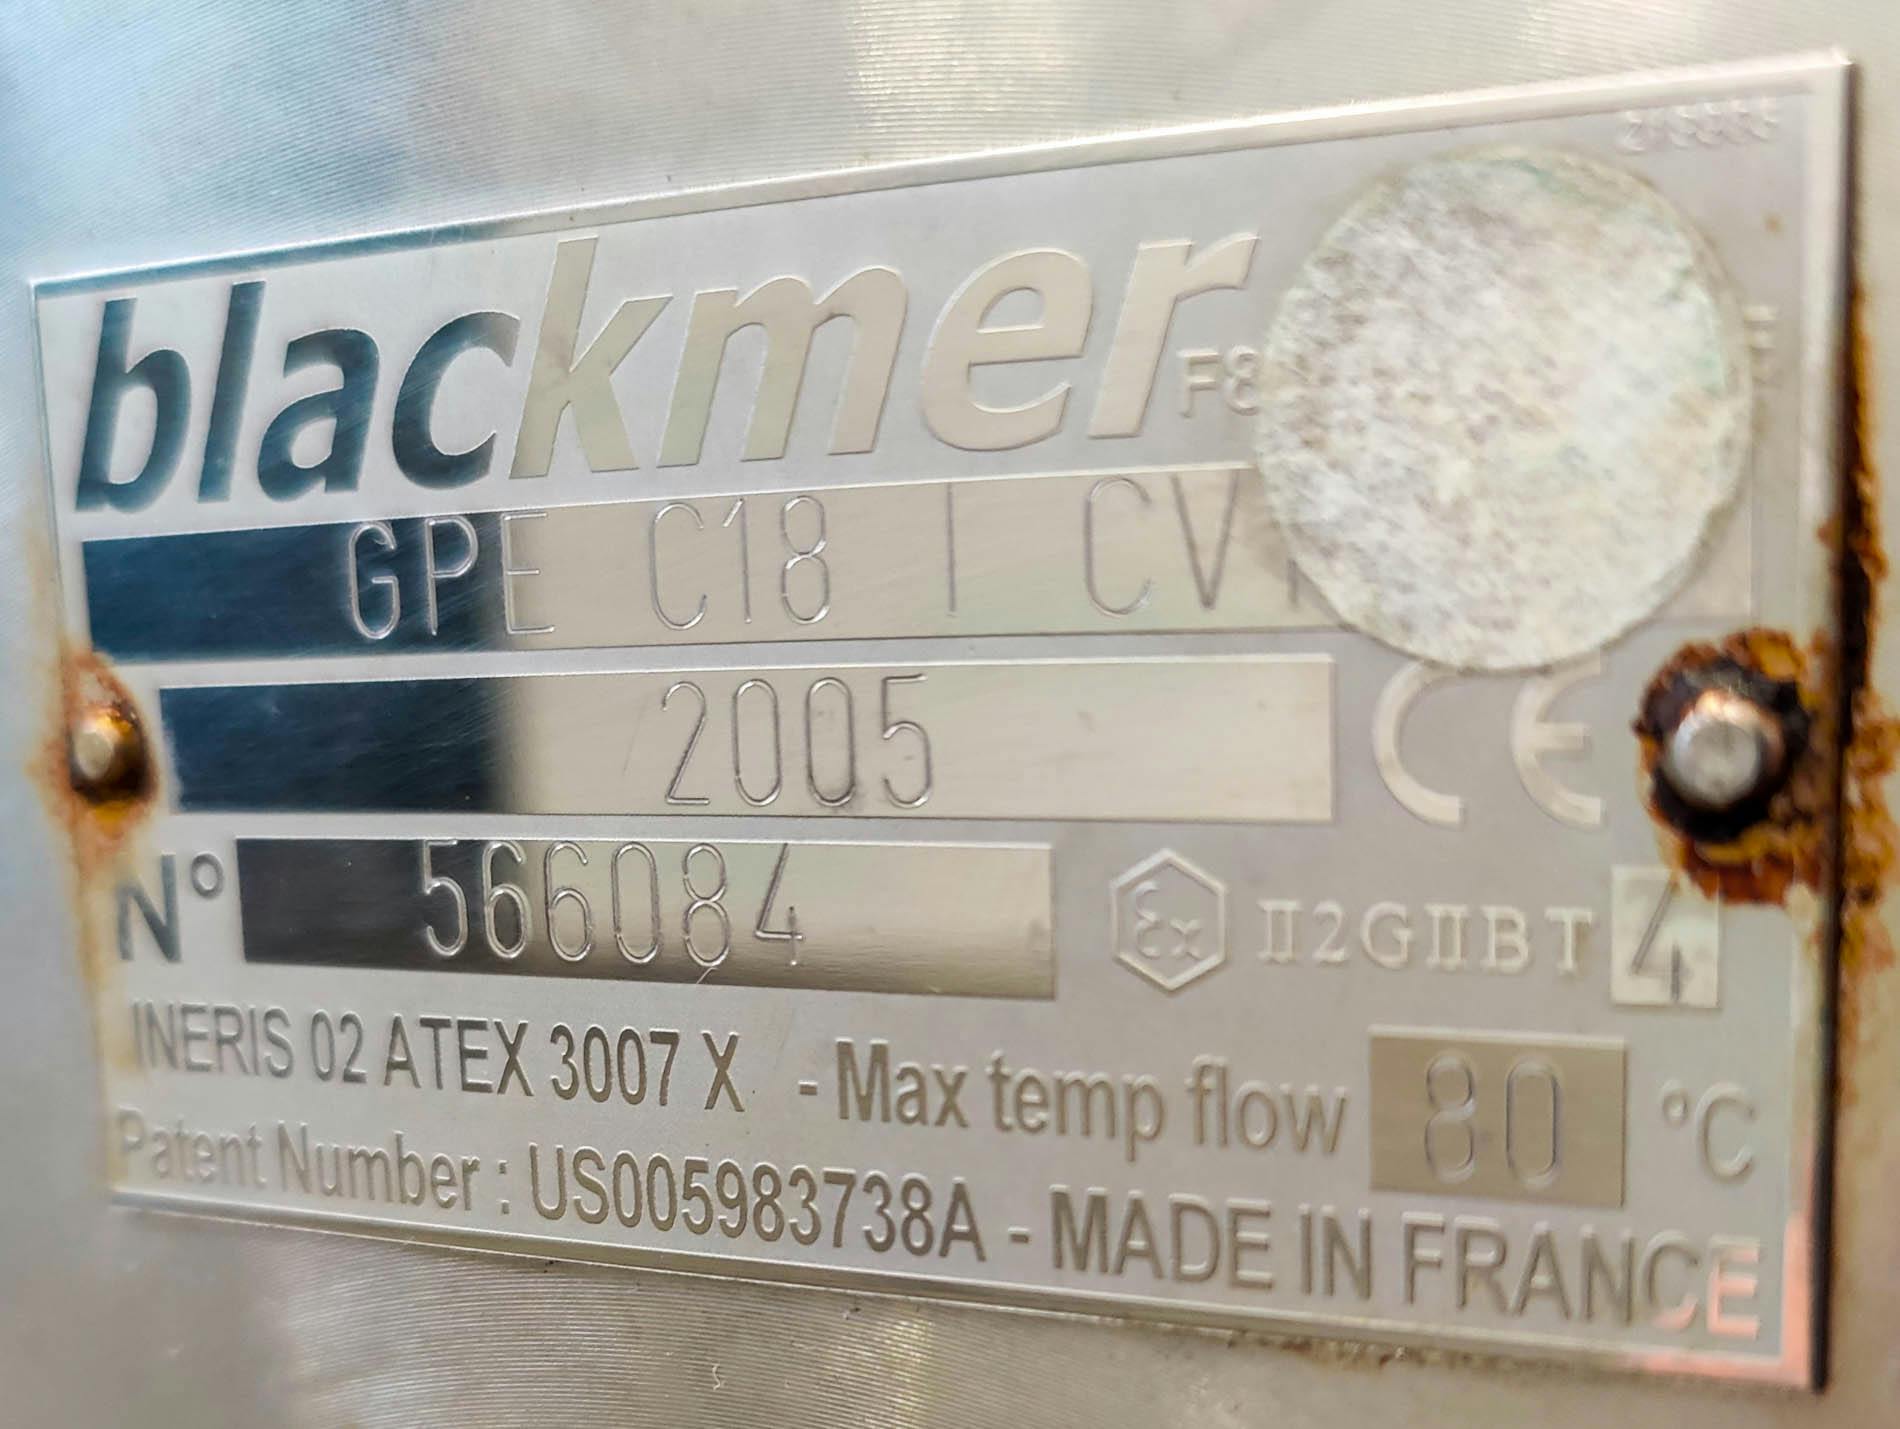 Blackmer GPI C18 I CV - Bomba de tornillo excéntrico - image 11